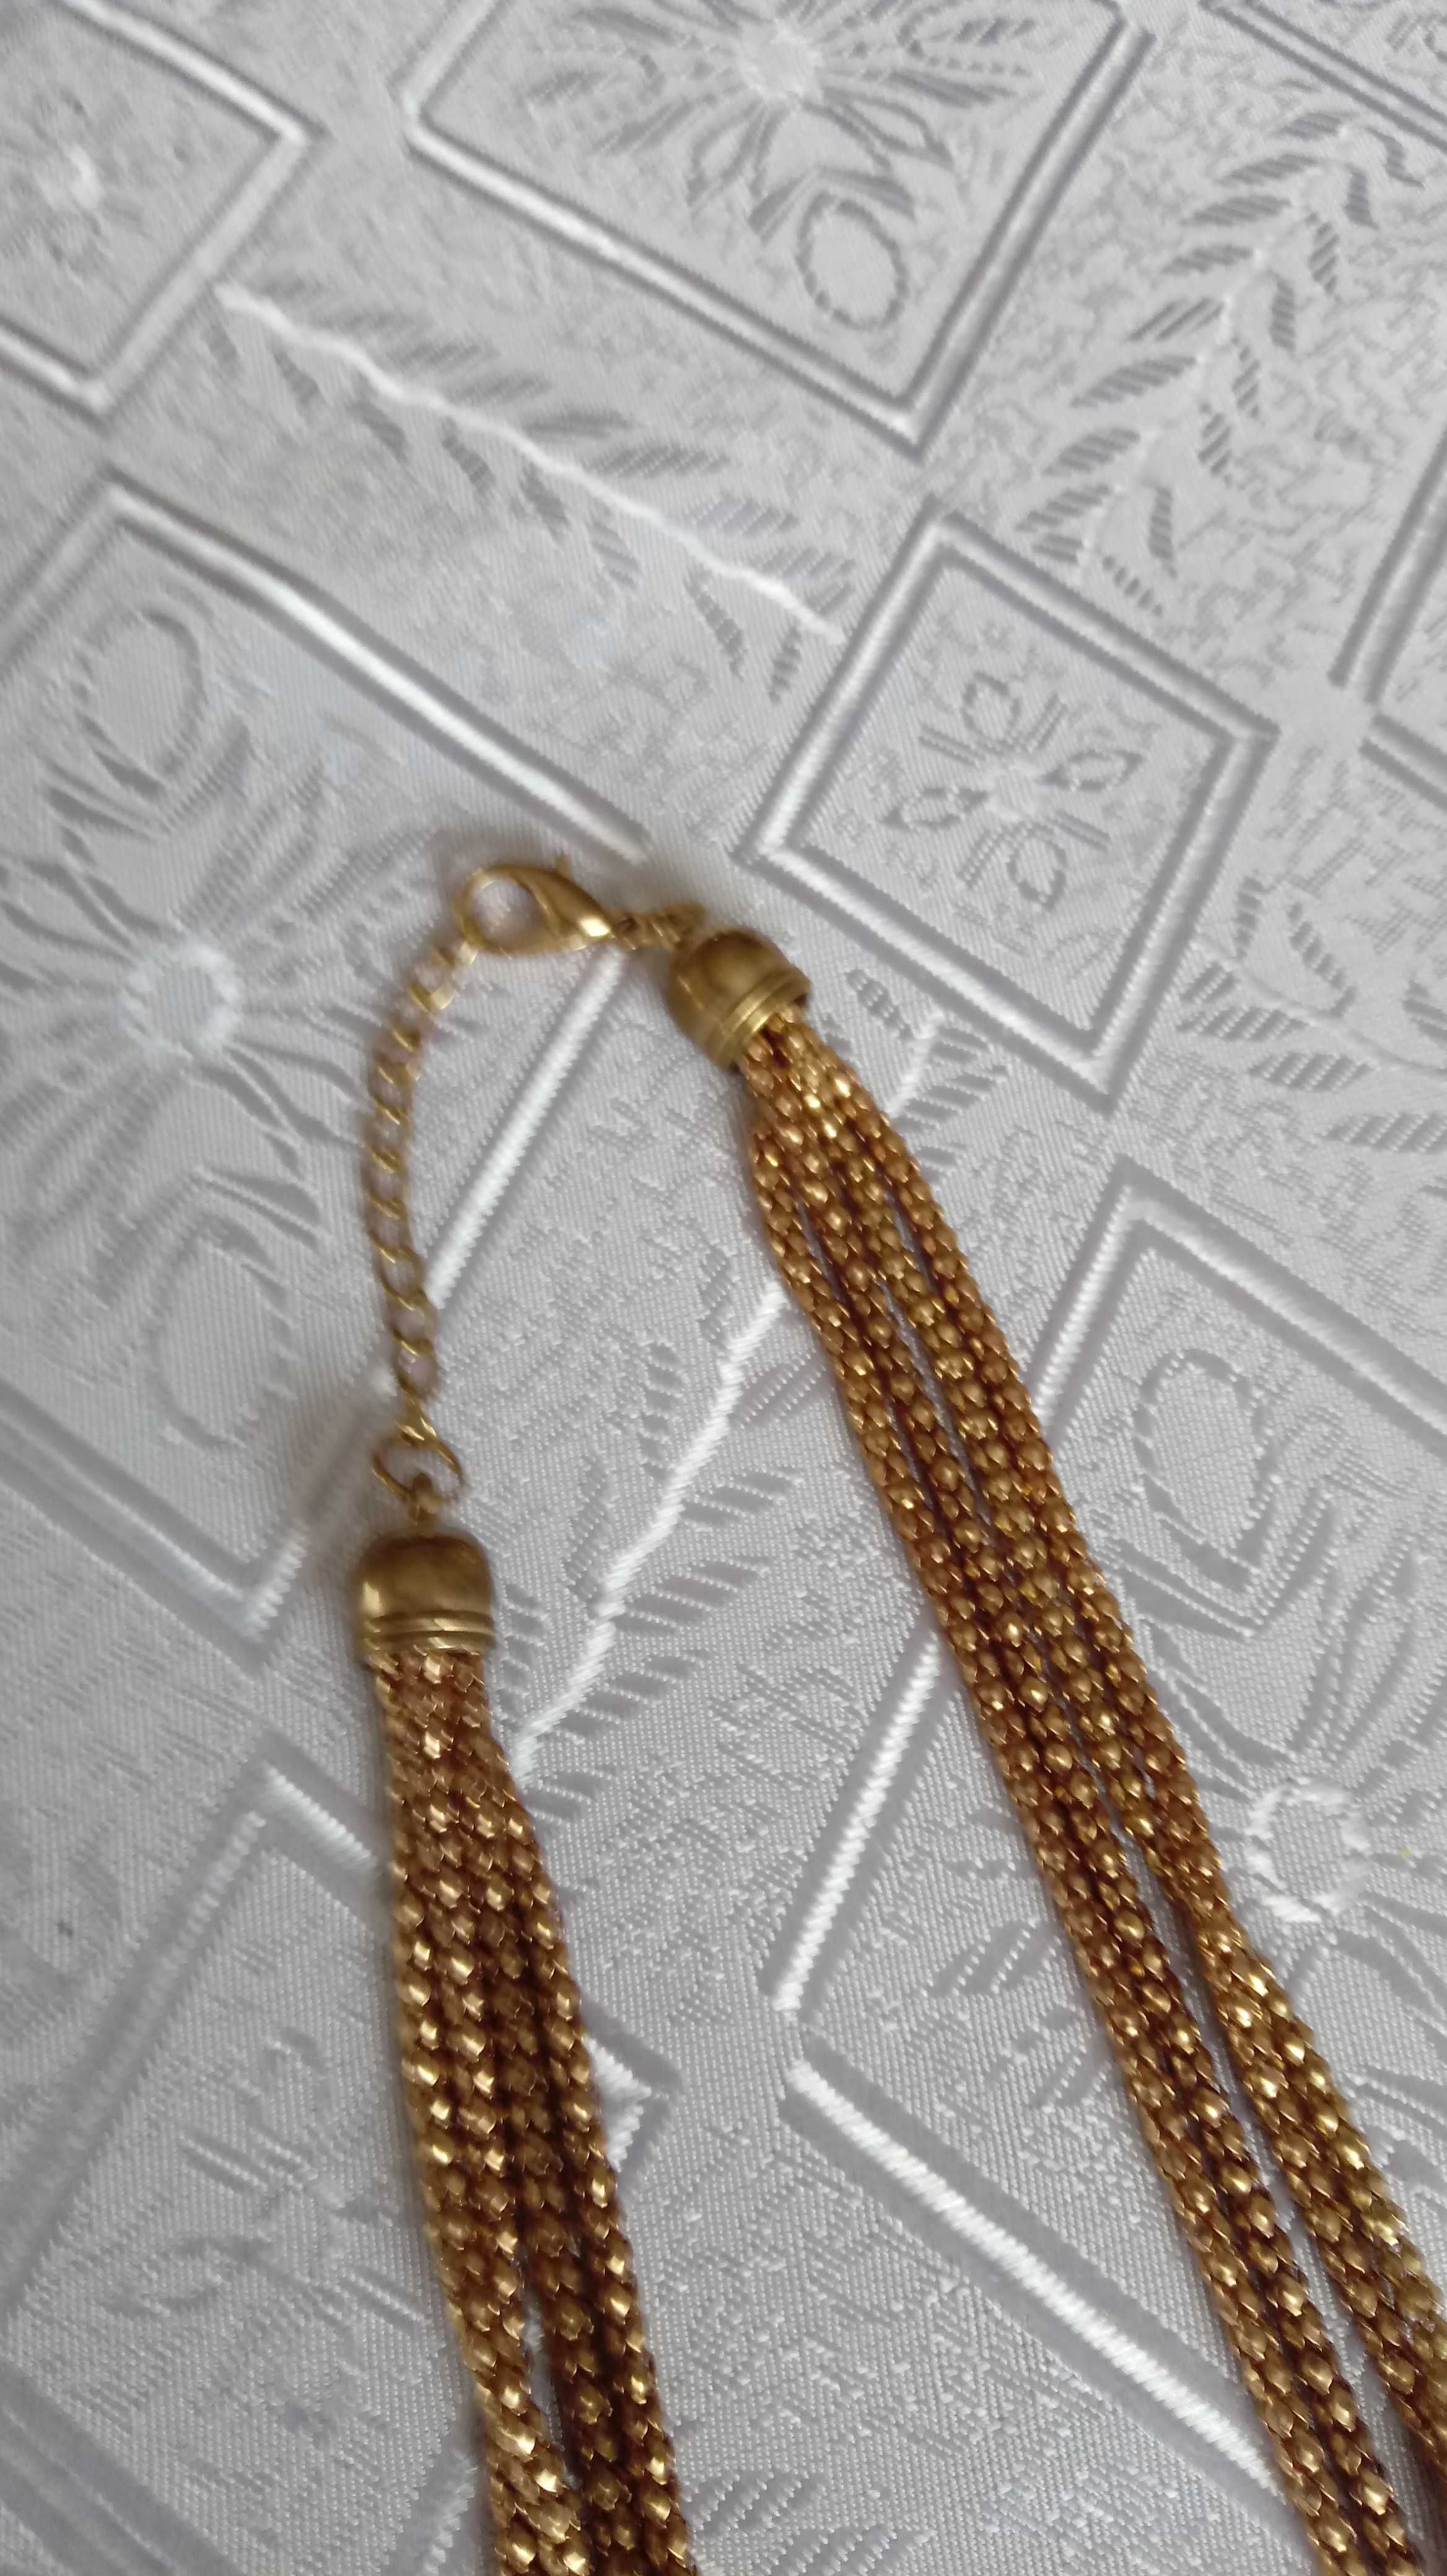 Łańcuszek,kolor stare złoto, dł. 70 cm.